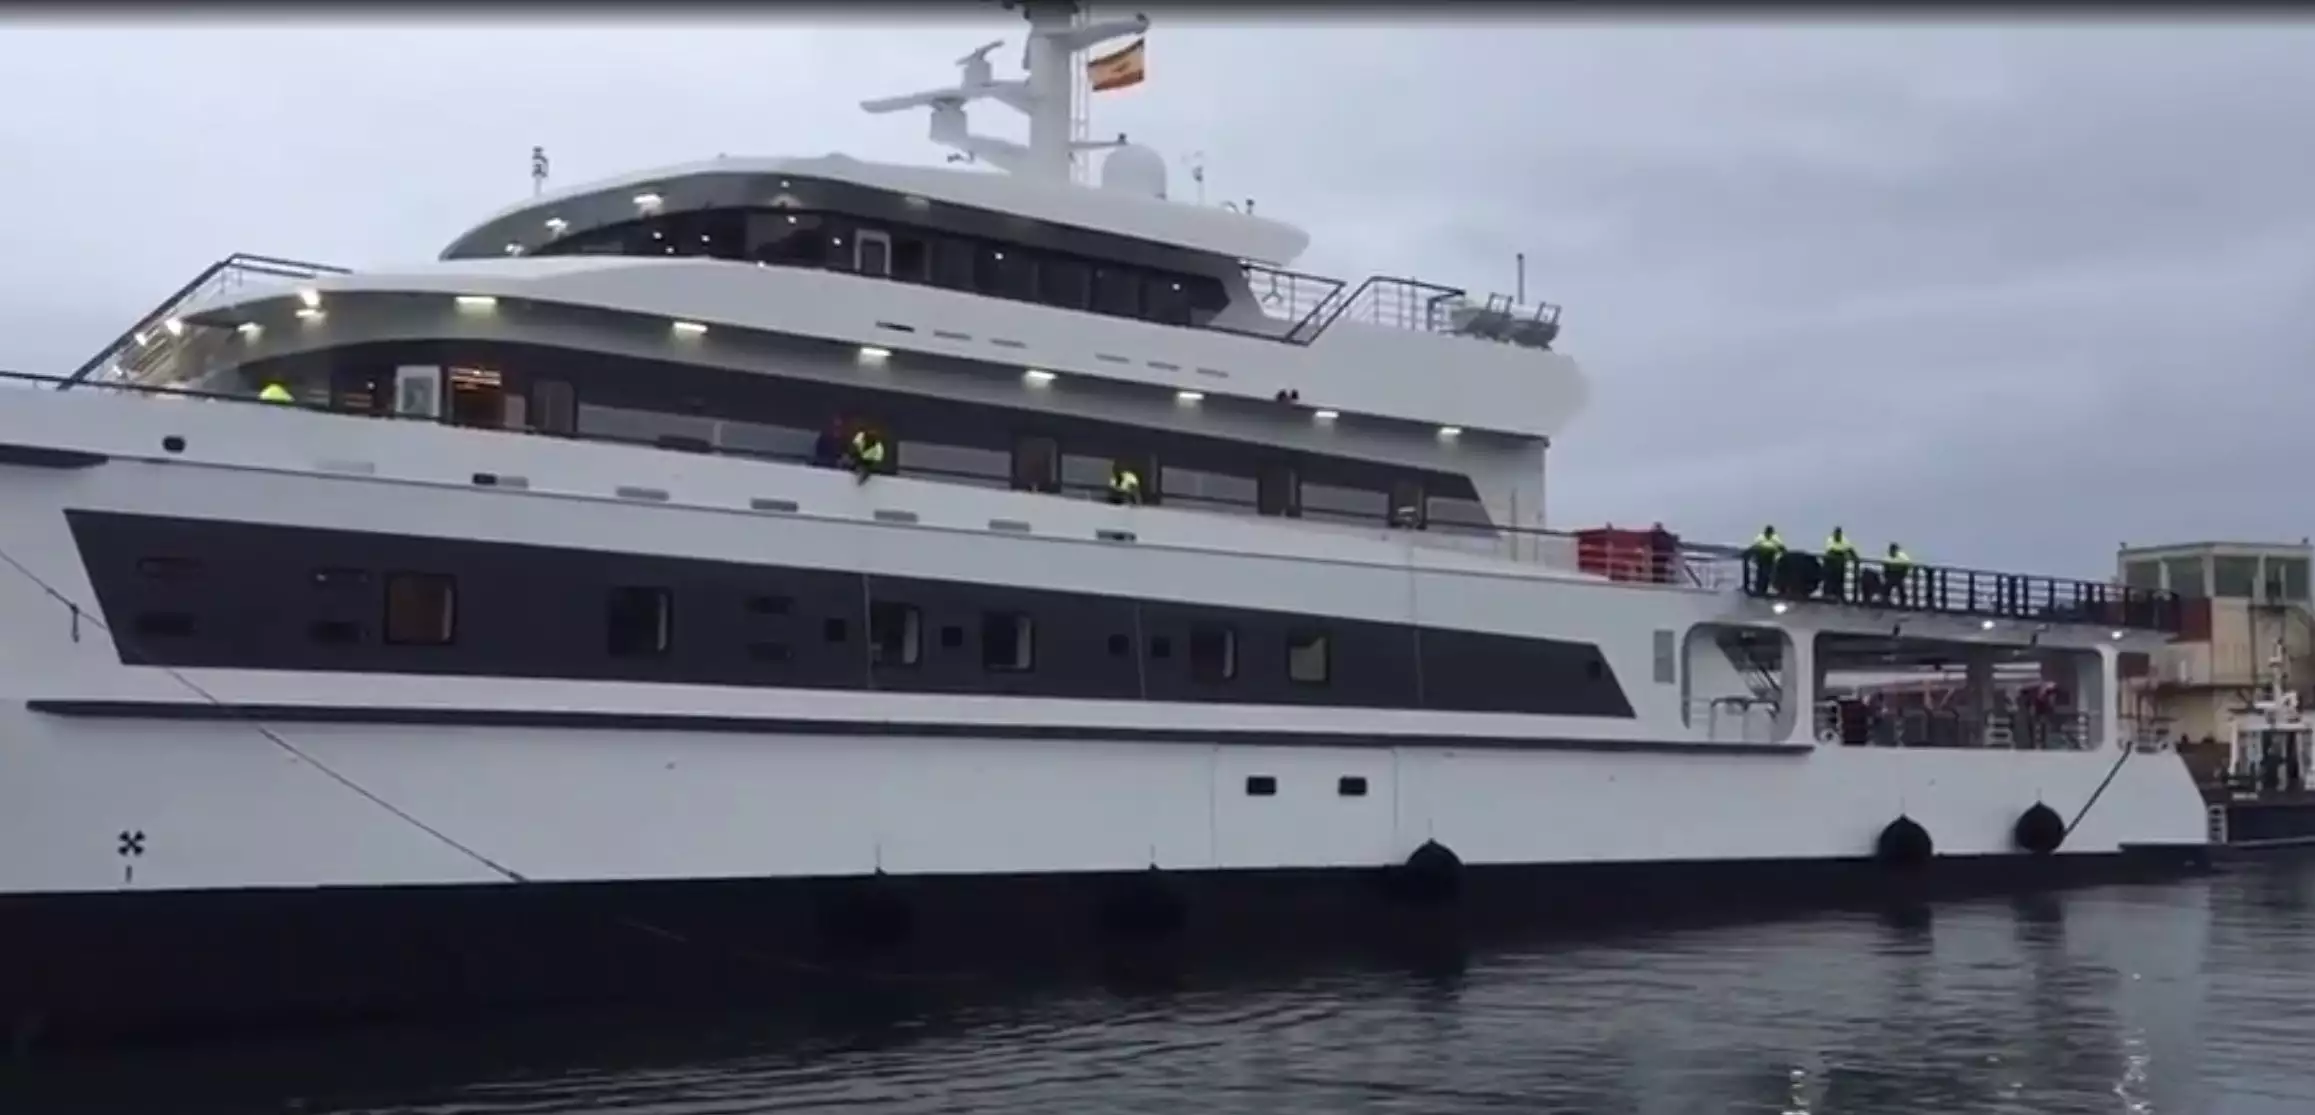 WAYFINDER Yacht • Astilleros Armon • 2020 • navire de soutien pour le superyacht de Bill Gates